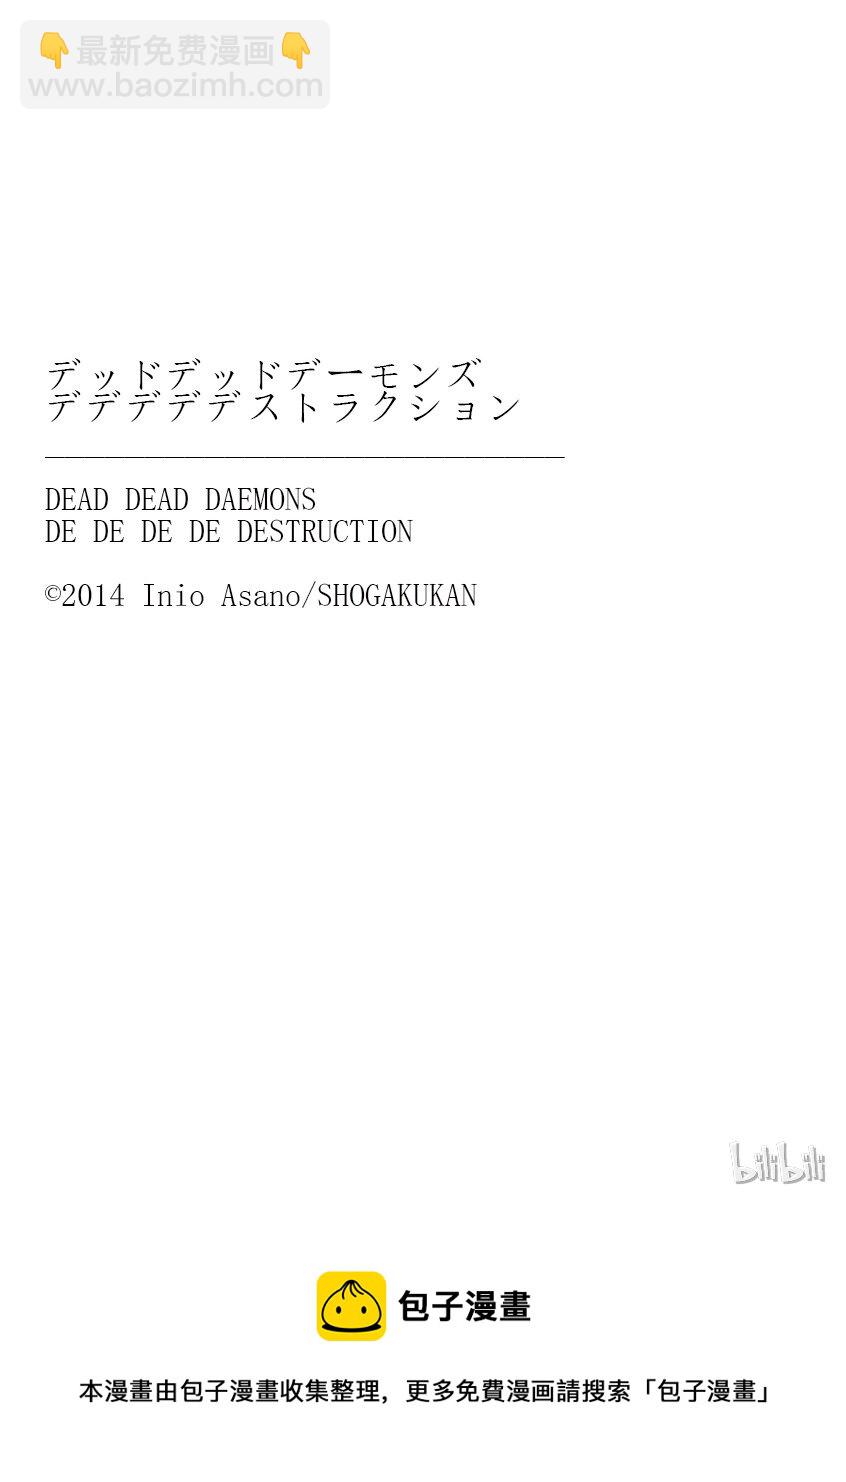 惡魔的破壞 DEAD DEAD DEMON'S DEDEDEDE DESTRUCTION - 008 - 2